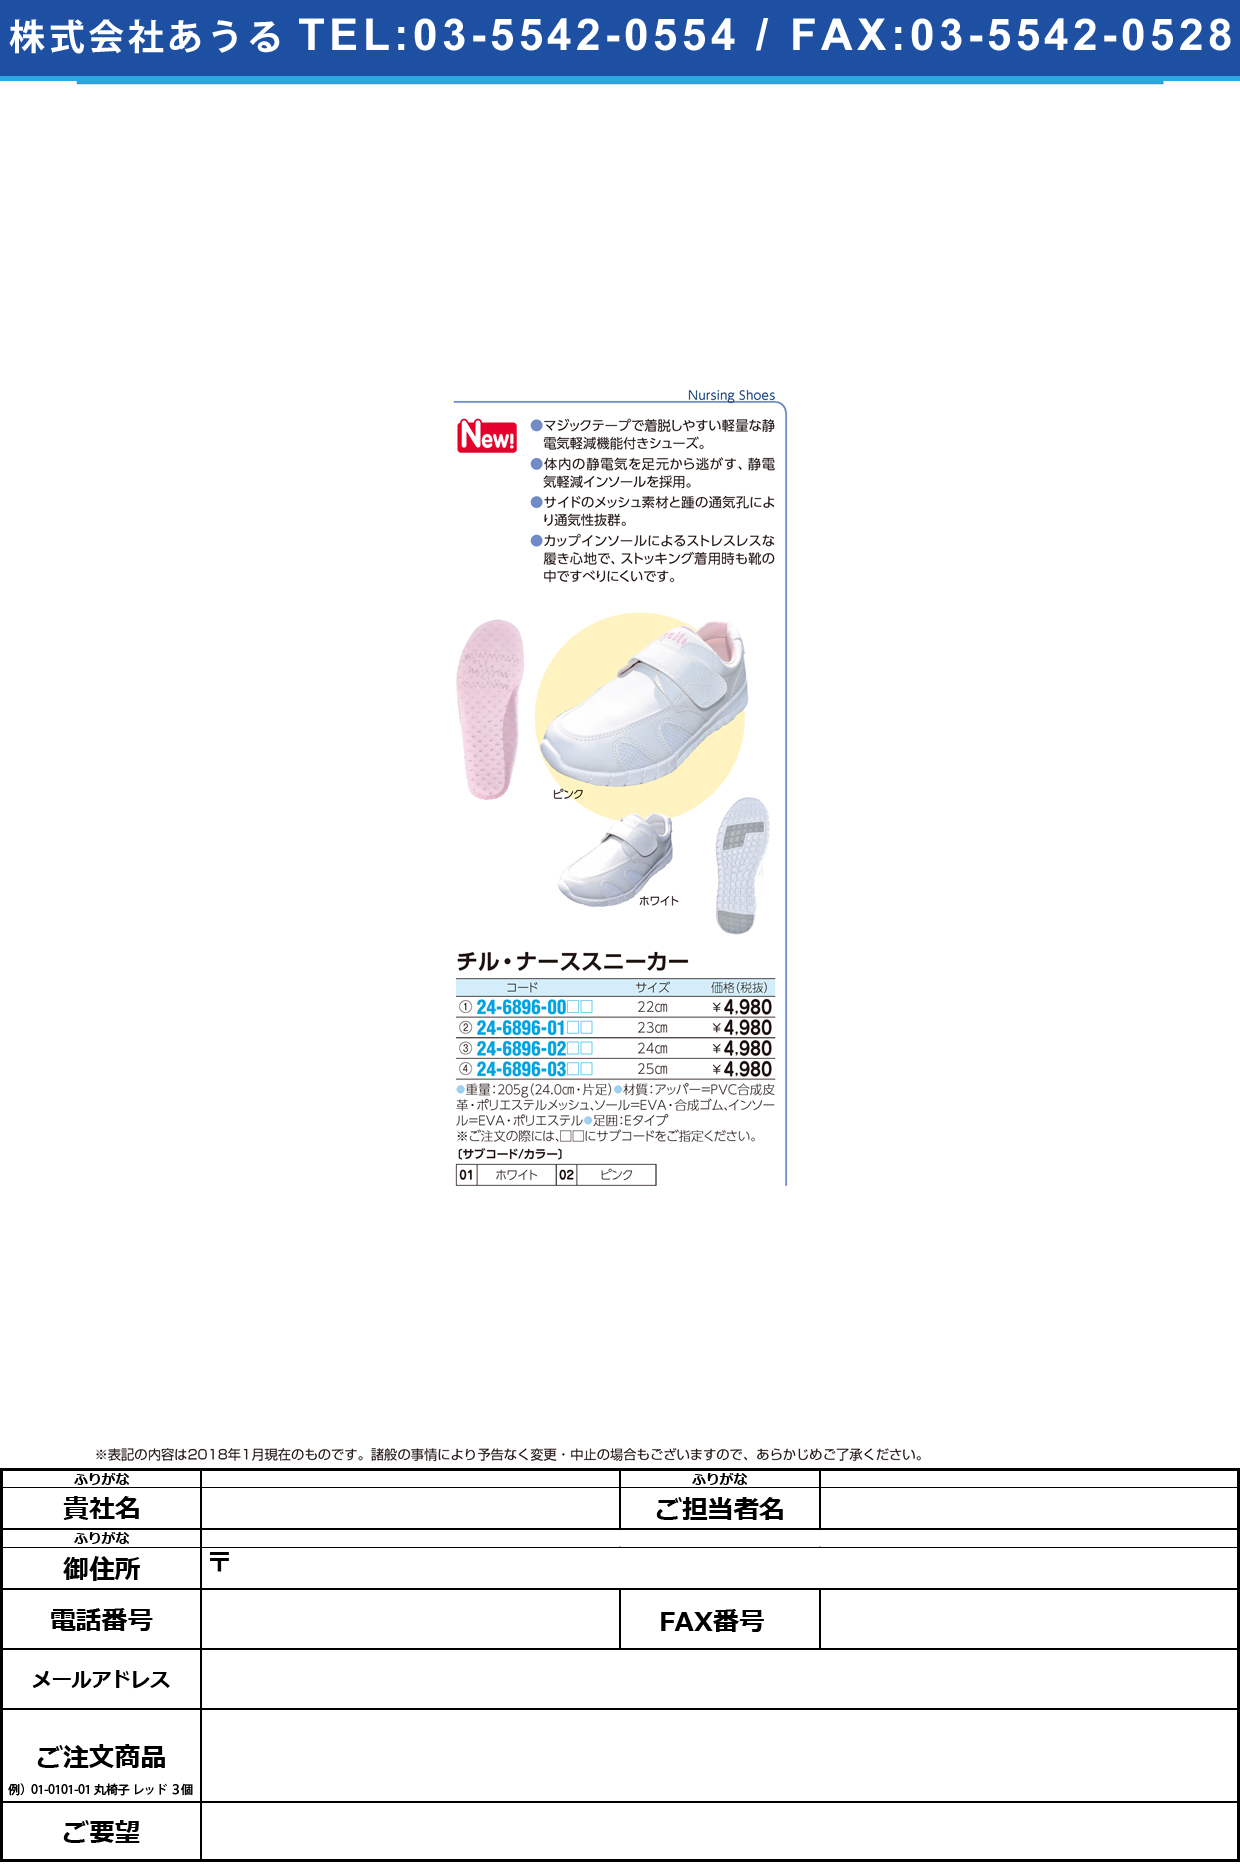 (24-6896-03)チル・ナーススニーカー 25.0CM ﾁﾙﾅｰｽｽﾆｰｶｰ ピンク【1足単位】【2019年カタログ商品】